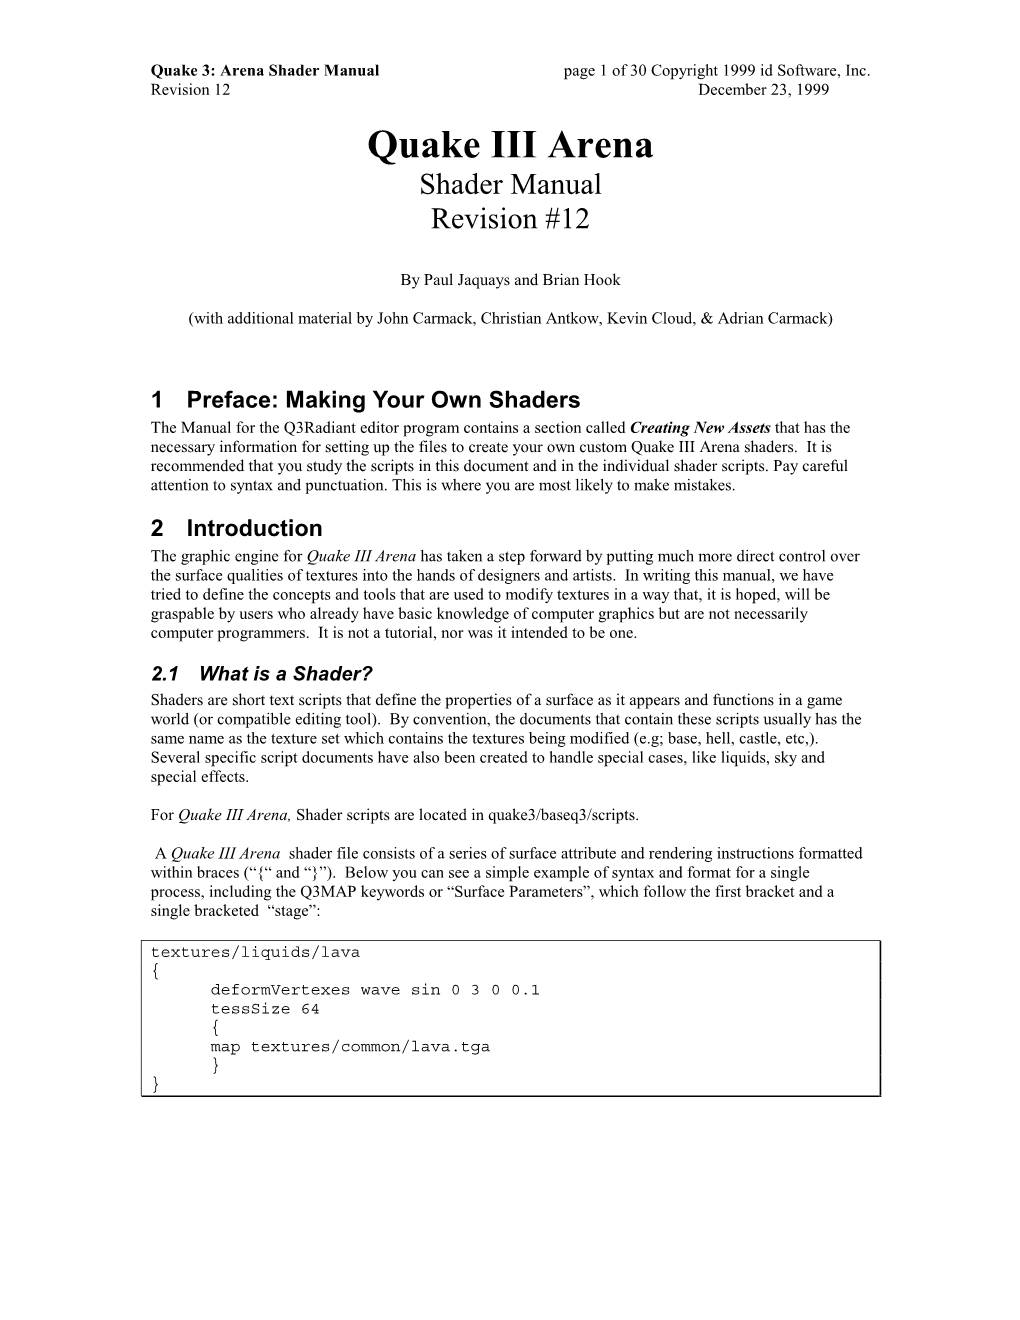 Quake 3: Arena Shader Manual, Revision 12